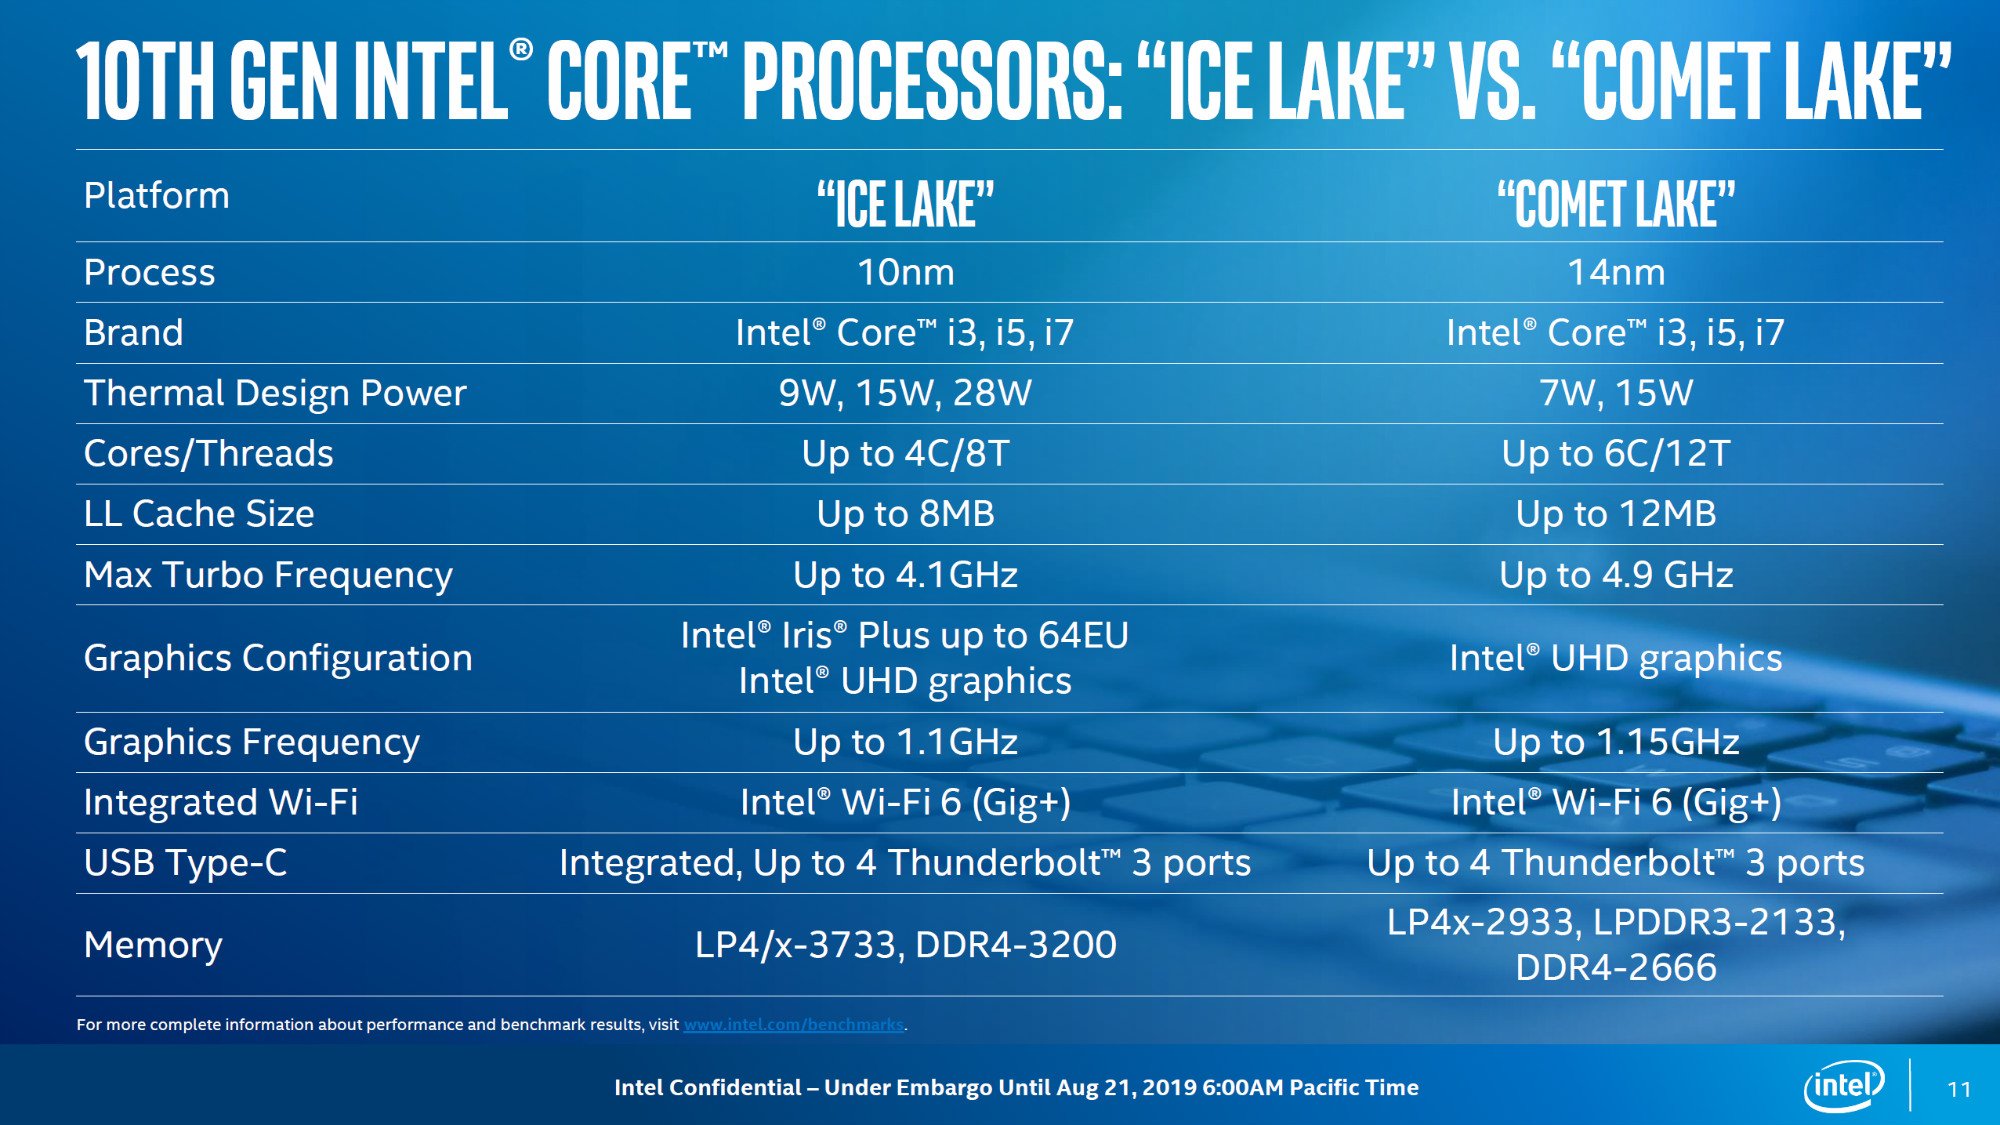 Hier ein schneller Vergleich zwischen Intel Comet Lake und Intel Ice Lake Prozessoren.